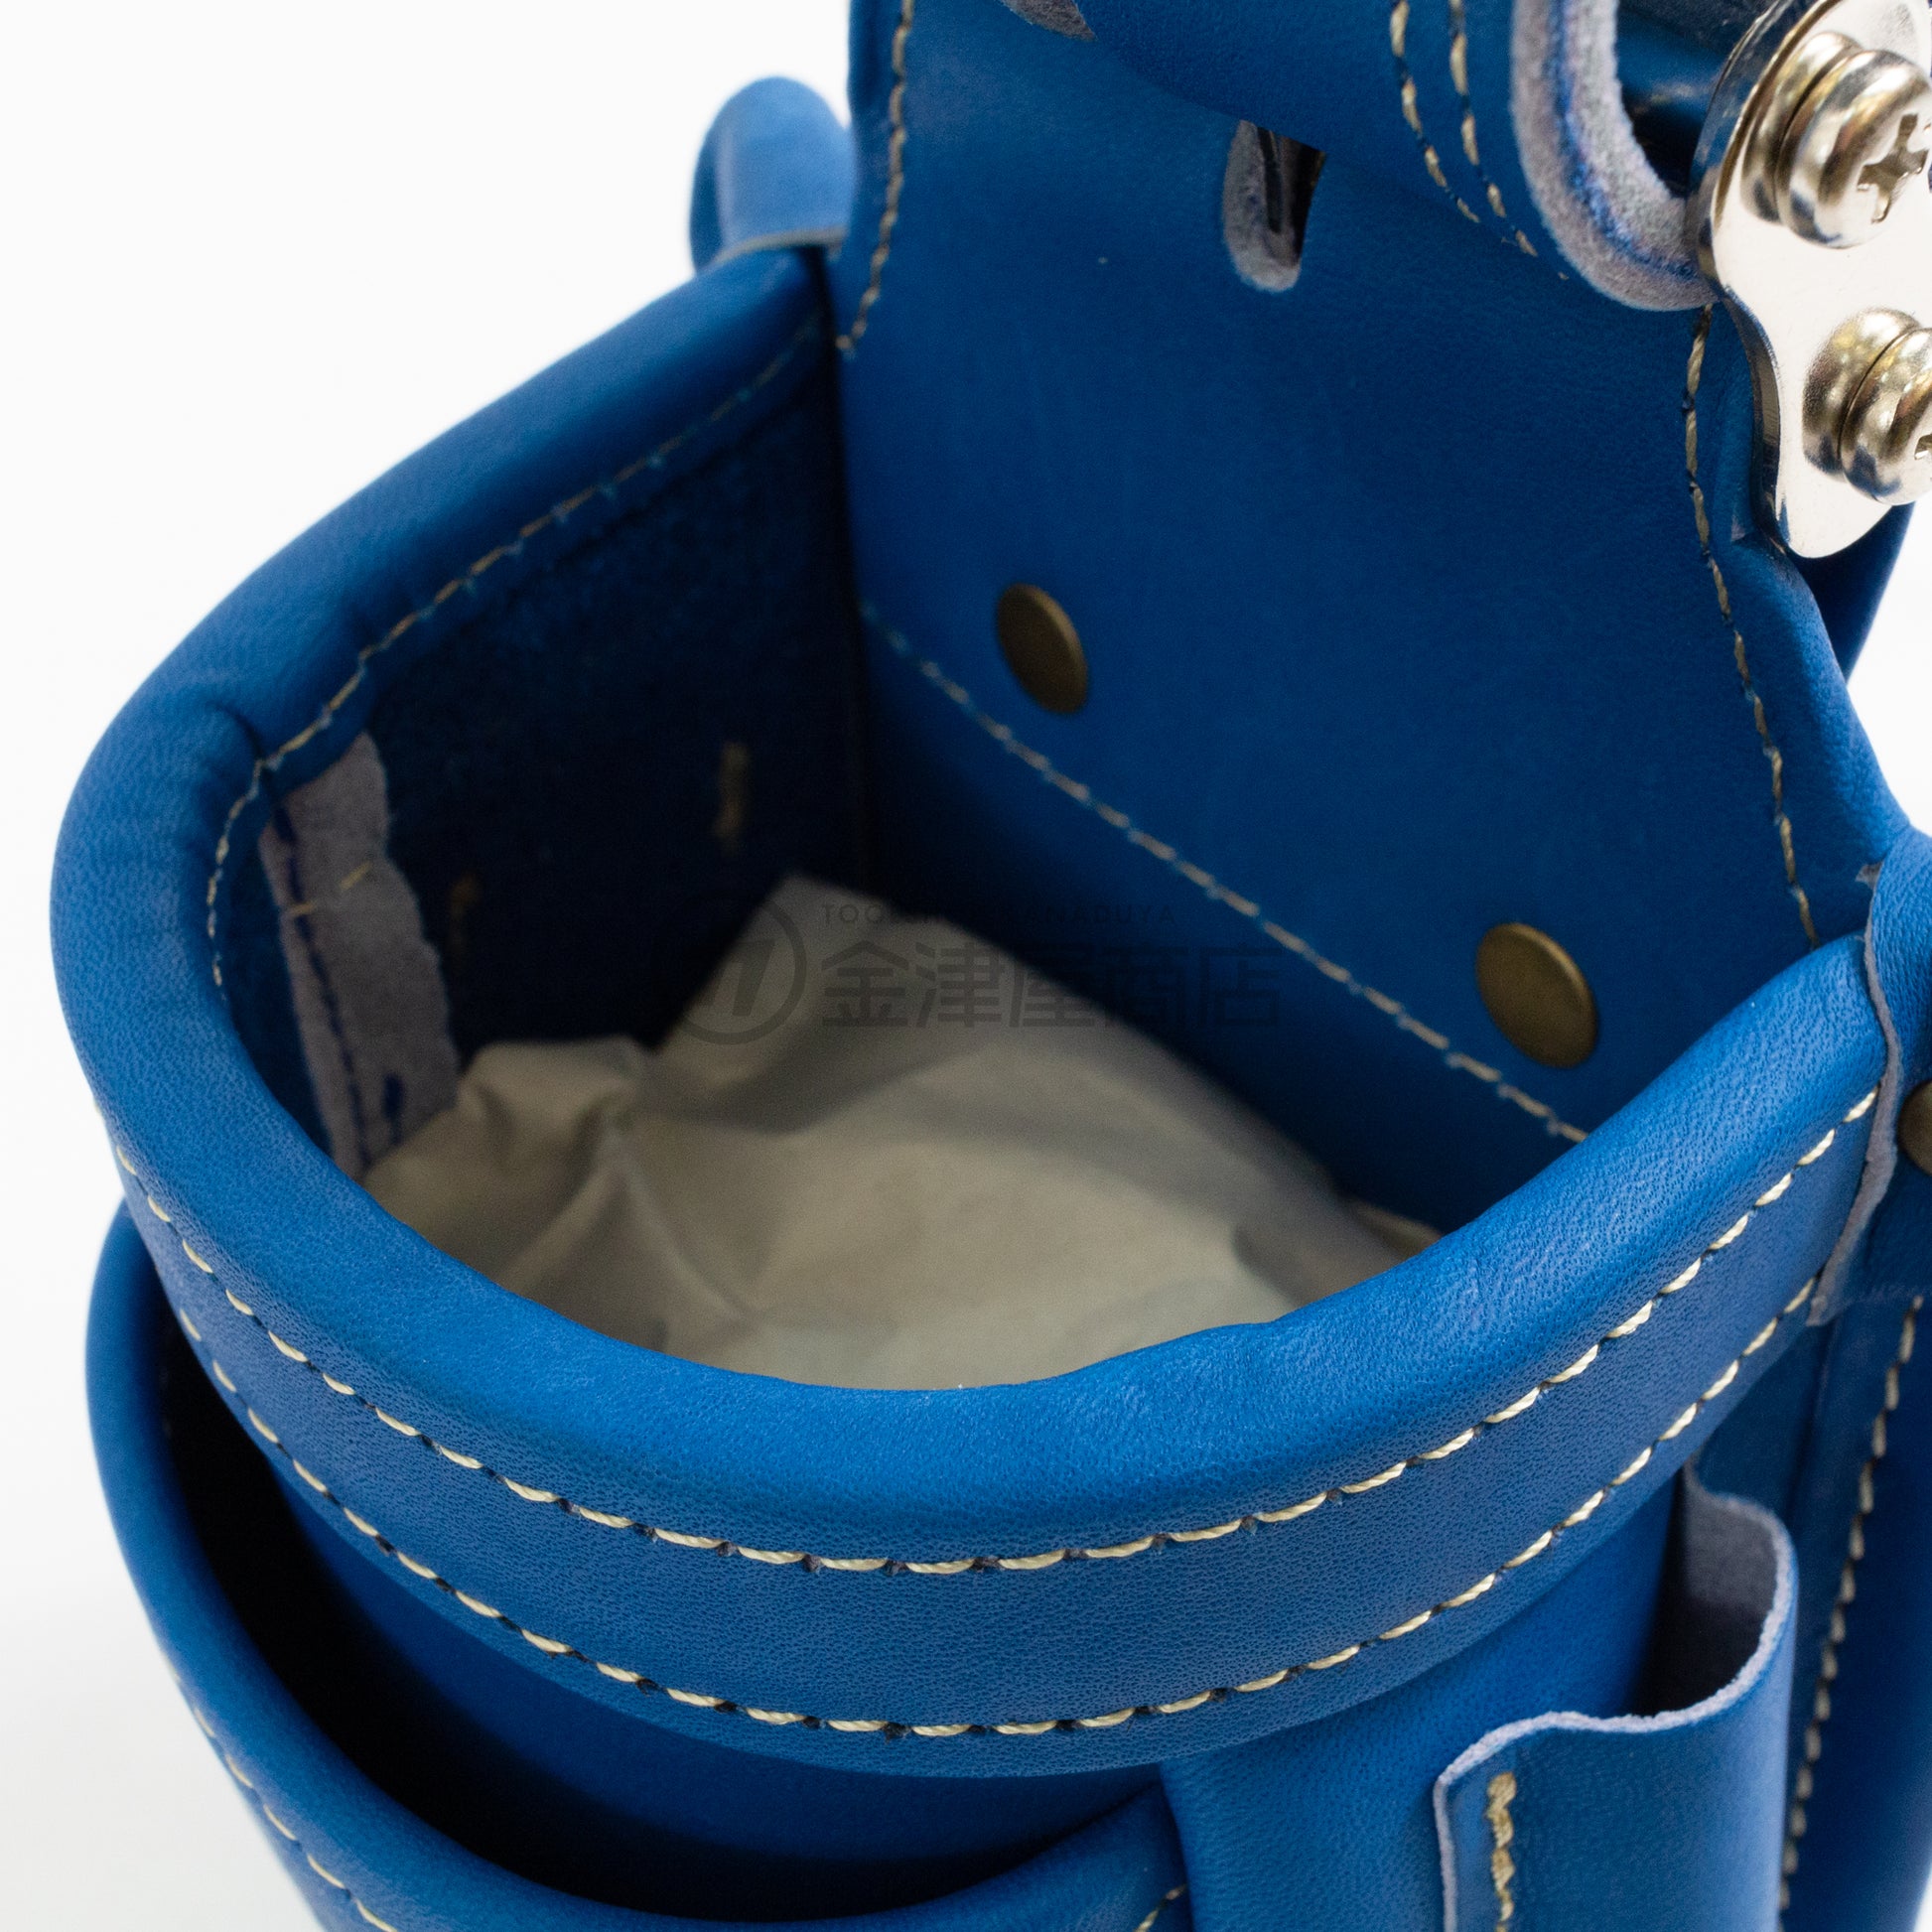 ニックス(KNICKS) 最高級硬式グローブ革小物腰袋 チェーンタイプ ブルー/レッド-腰袋-金津屋商店